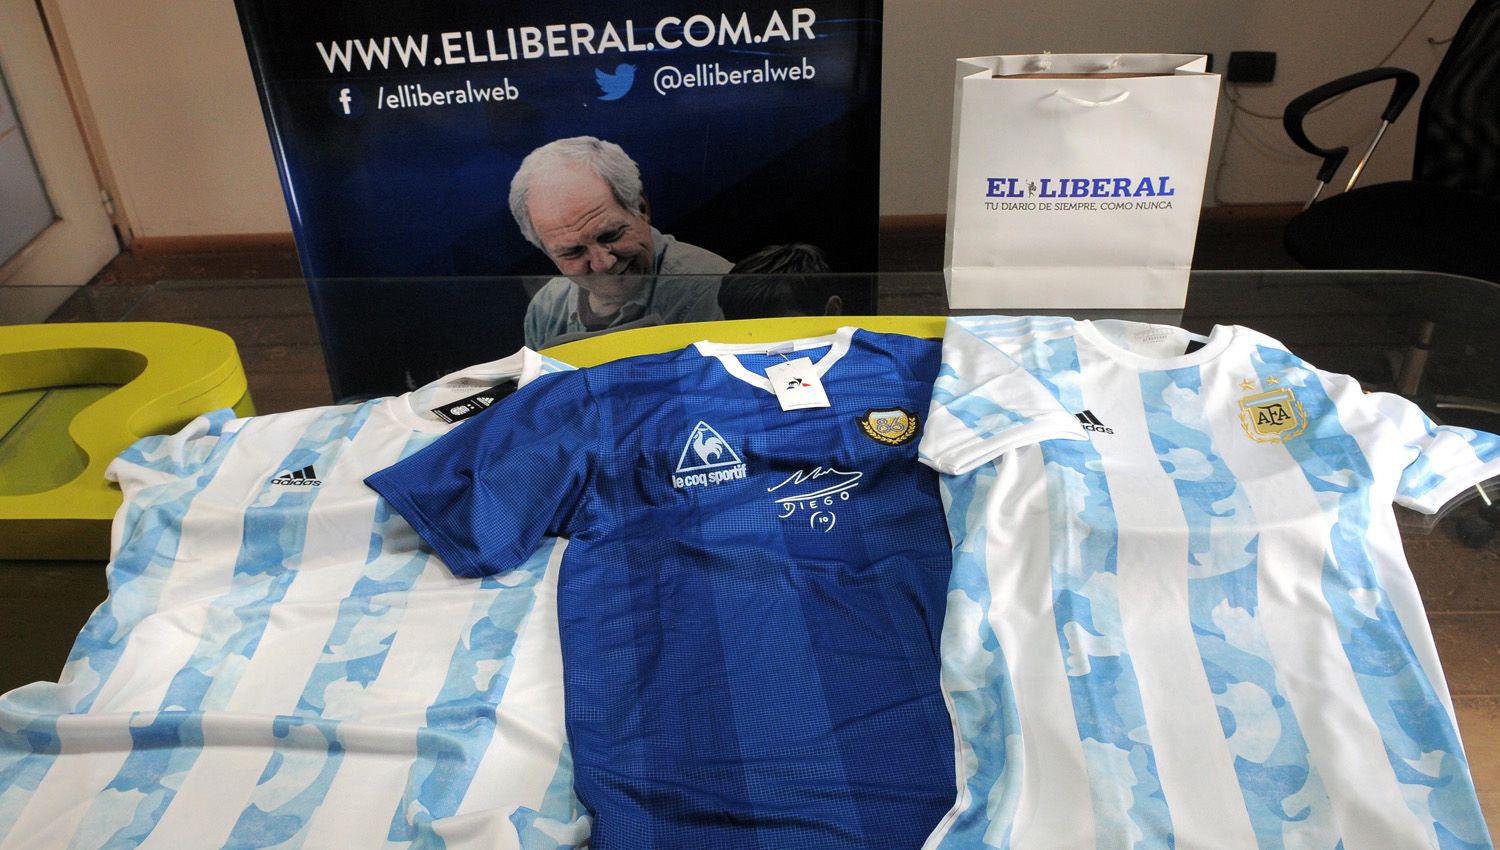 Uacuteltimas horas para participar del sorteo de las camisetas de la Seleccioacuten Argentina